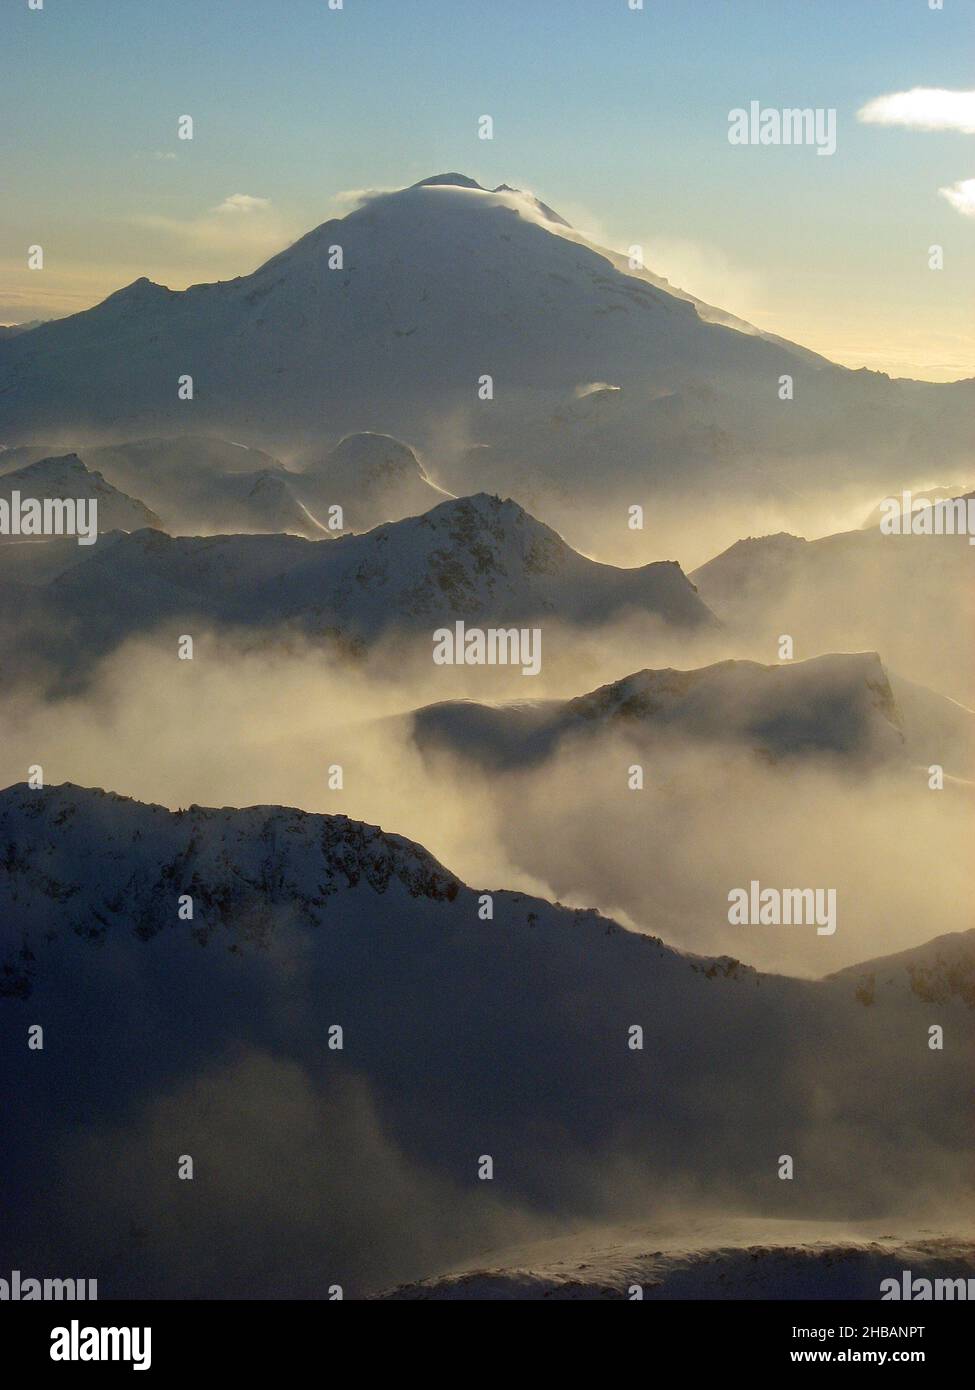 Ein nebliger Wintermorgen, Lake Clark National Park & Preserve. Tief liegende Wolken füllen die Täler zwischen Graten, die zu einem silhouettierten Redoubt-Vulkan führen. Mount Redoubt ist ein aktiver Stratovulkan im aleutischen Gebirge, Alaska, USA. Eine einzigartige, optimierte Version eines NPS-Bildes - Quelle: NPS/P. Spencer Stockfoto